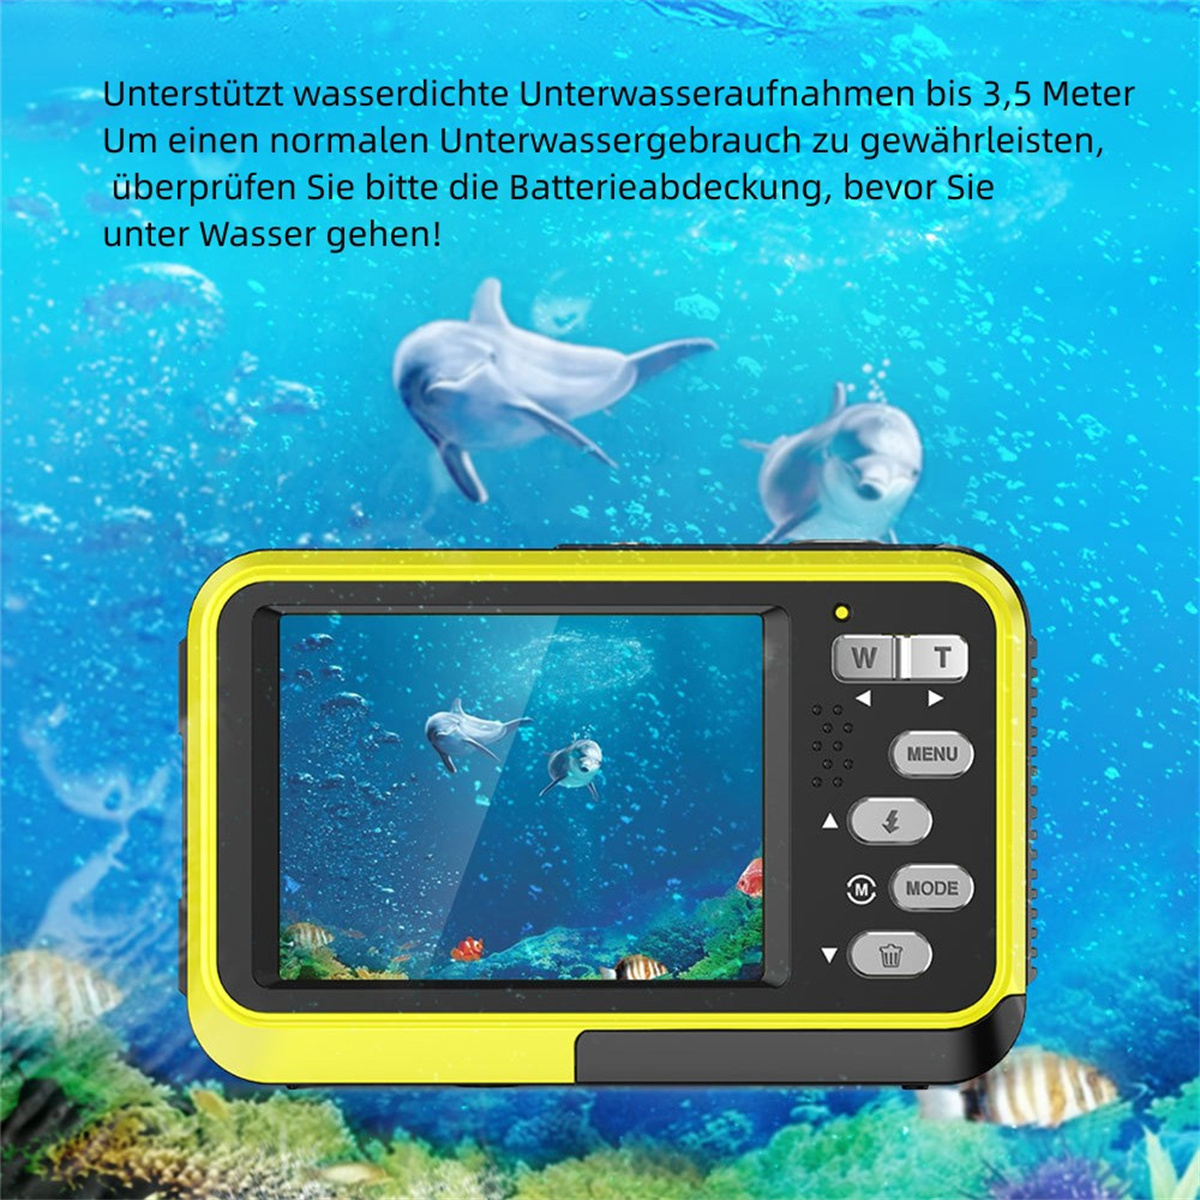 SYNTEK HD Fotografie Wasserdichte LCD-Bildschirm intelligenter Dual Autofokus, gelb, Kamera Verwacklungsschutz - Screen Digitalkamera